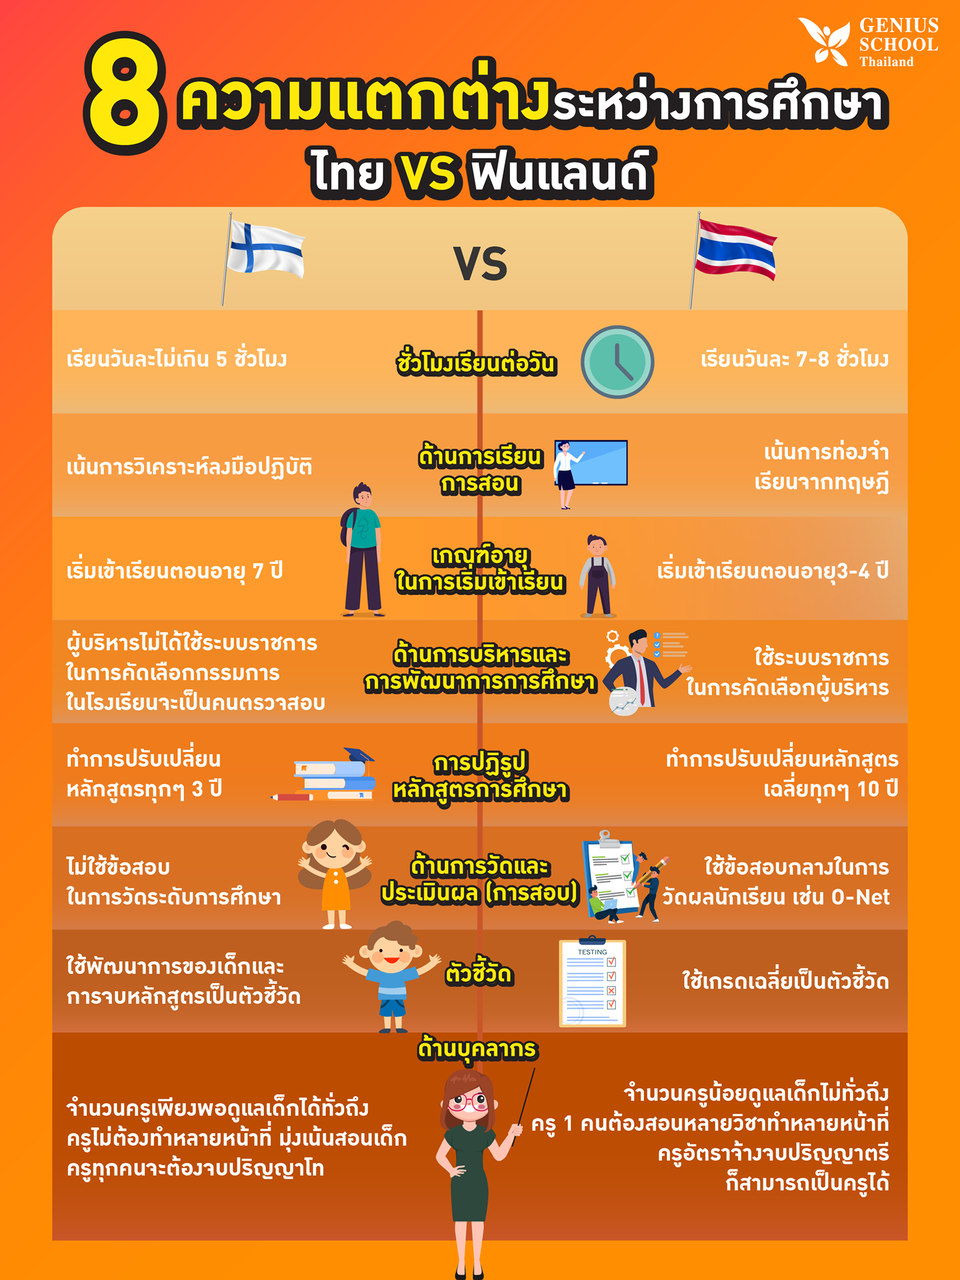 8 ความแตกต่างระหว่างการศึกษาไทย VS ฟินแลนด์